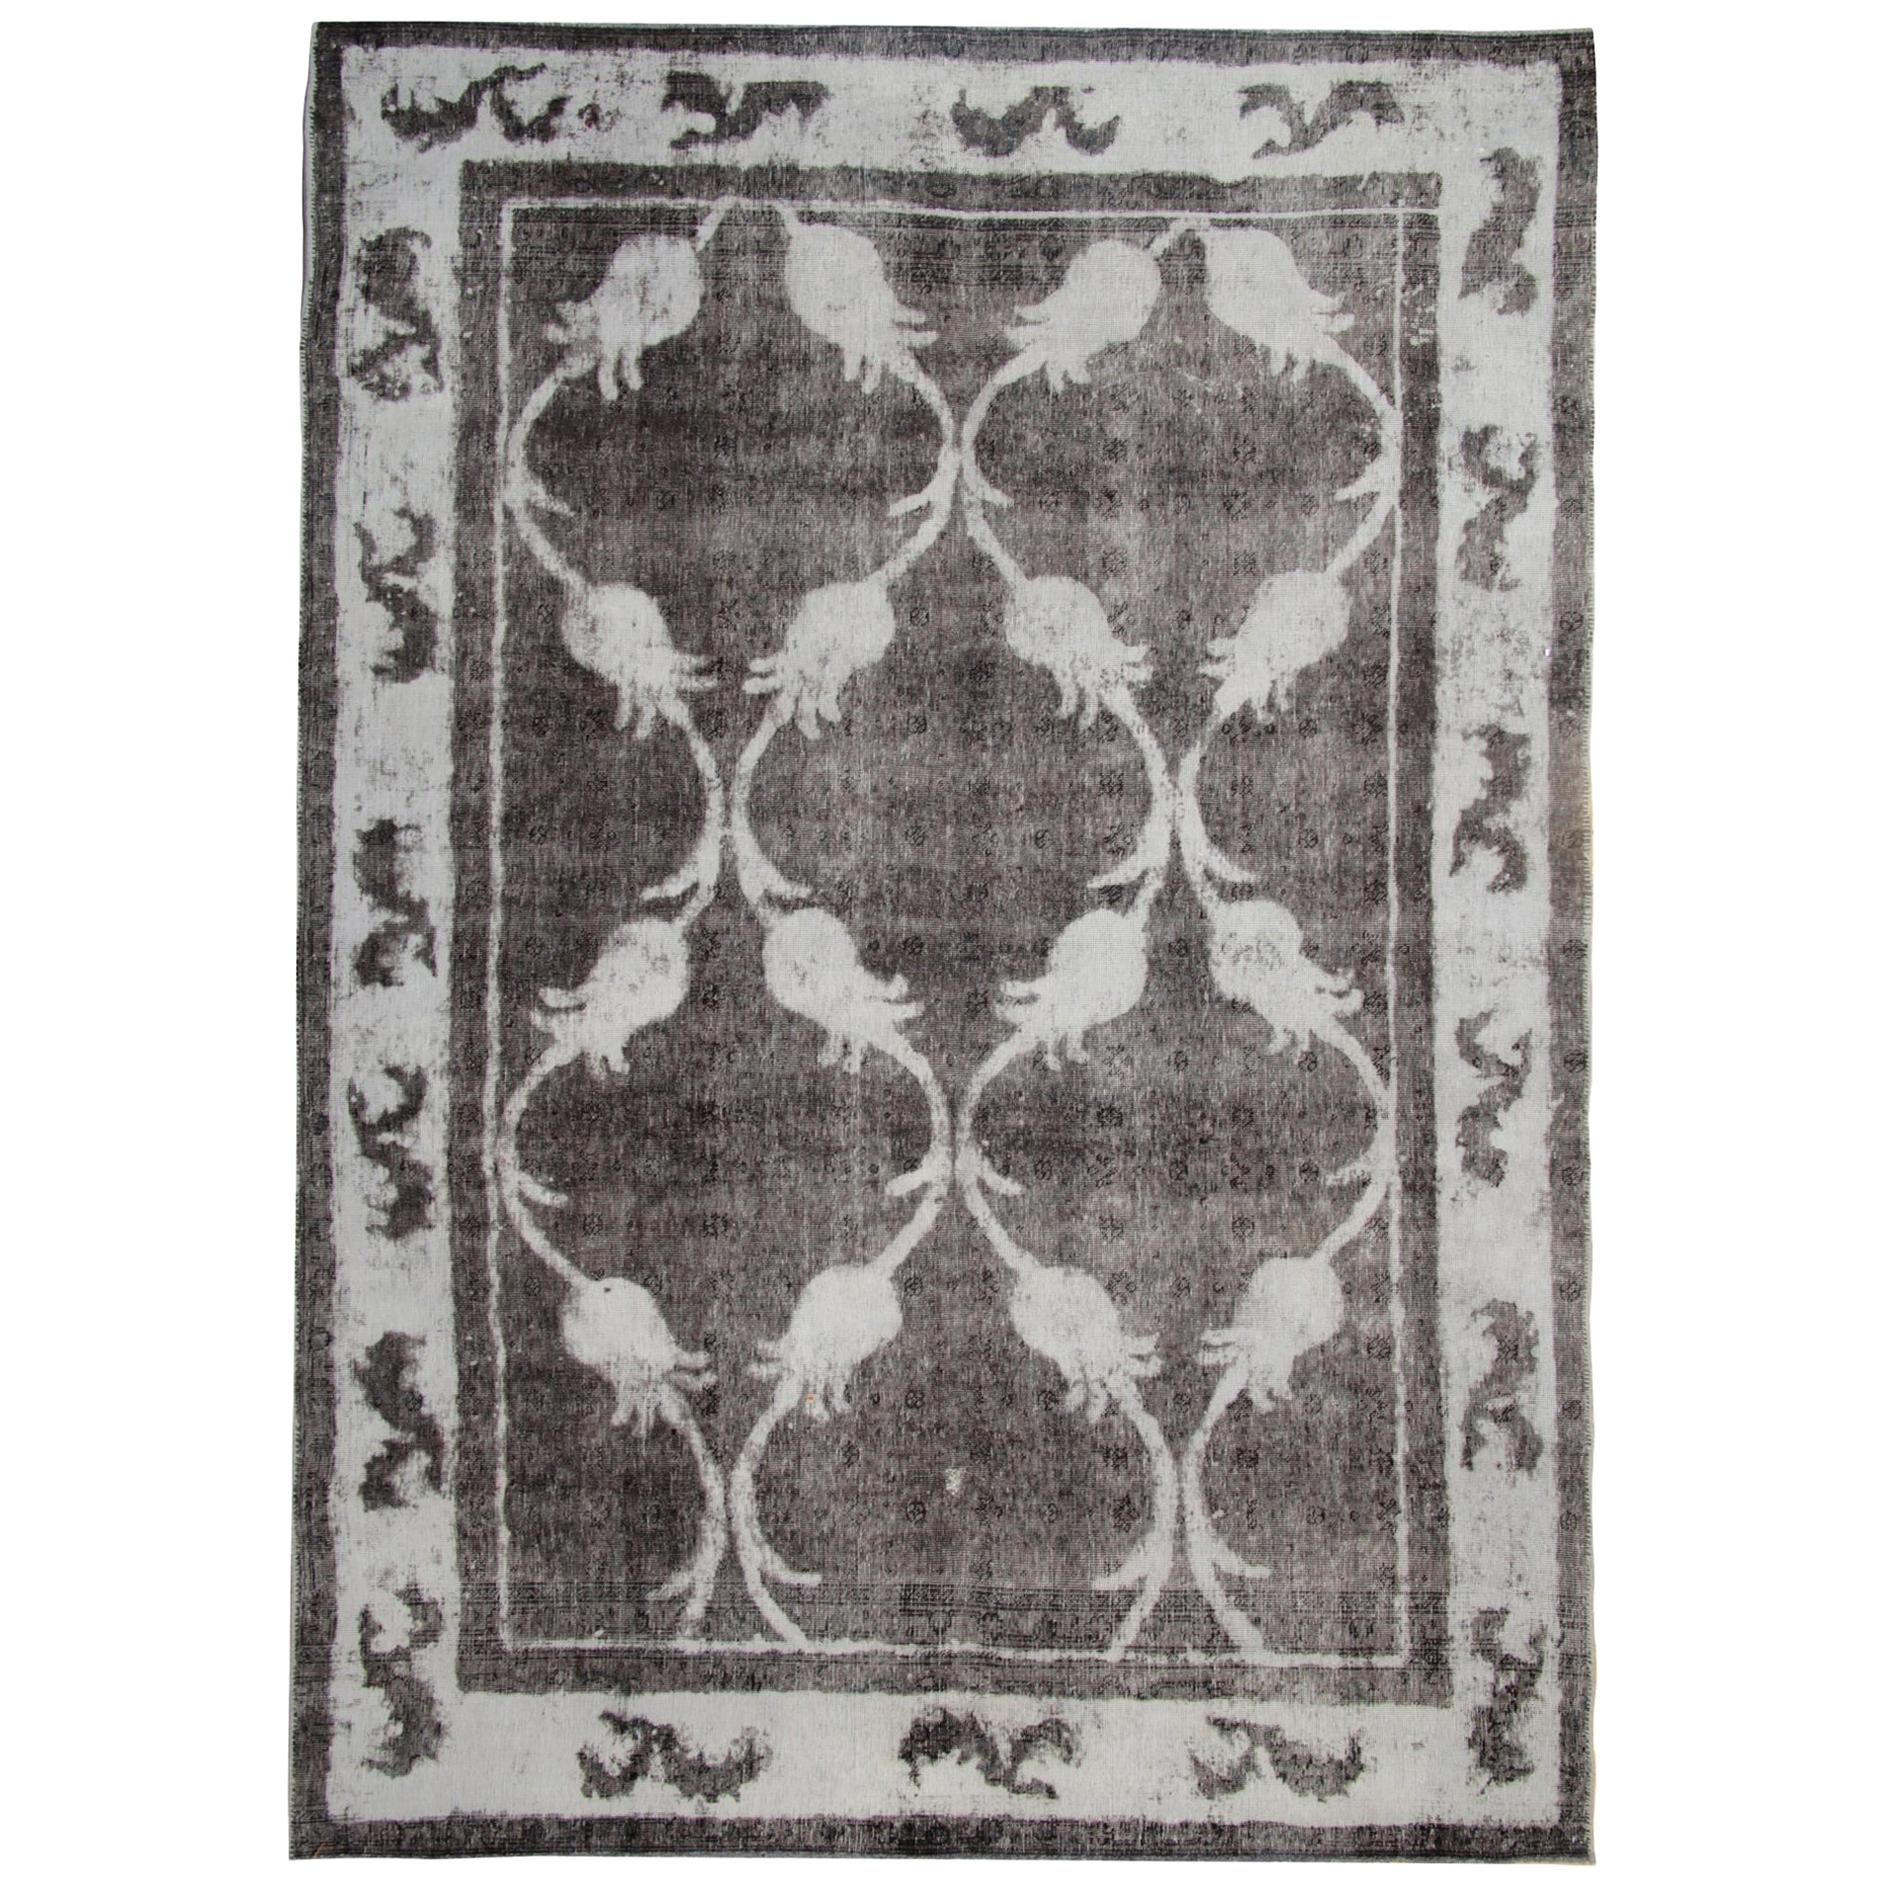 Handgefertigter grauer Vintage Teppich Türkischer Teppich Floral Gray Oriental Teppich in hoher Qualität